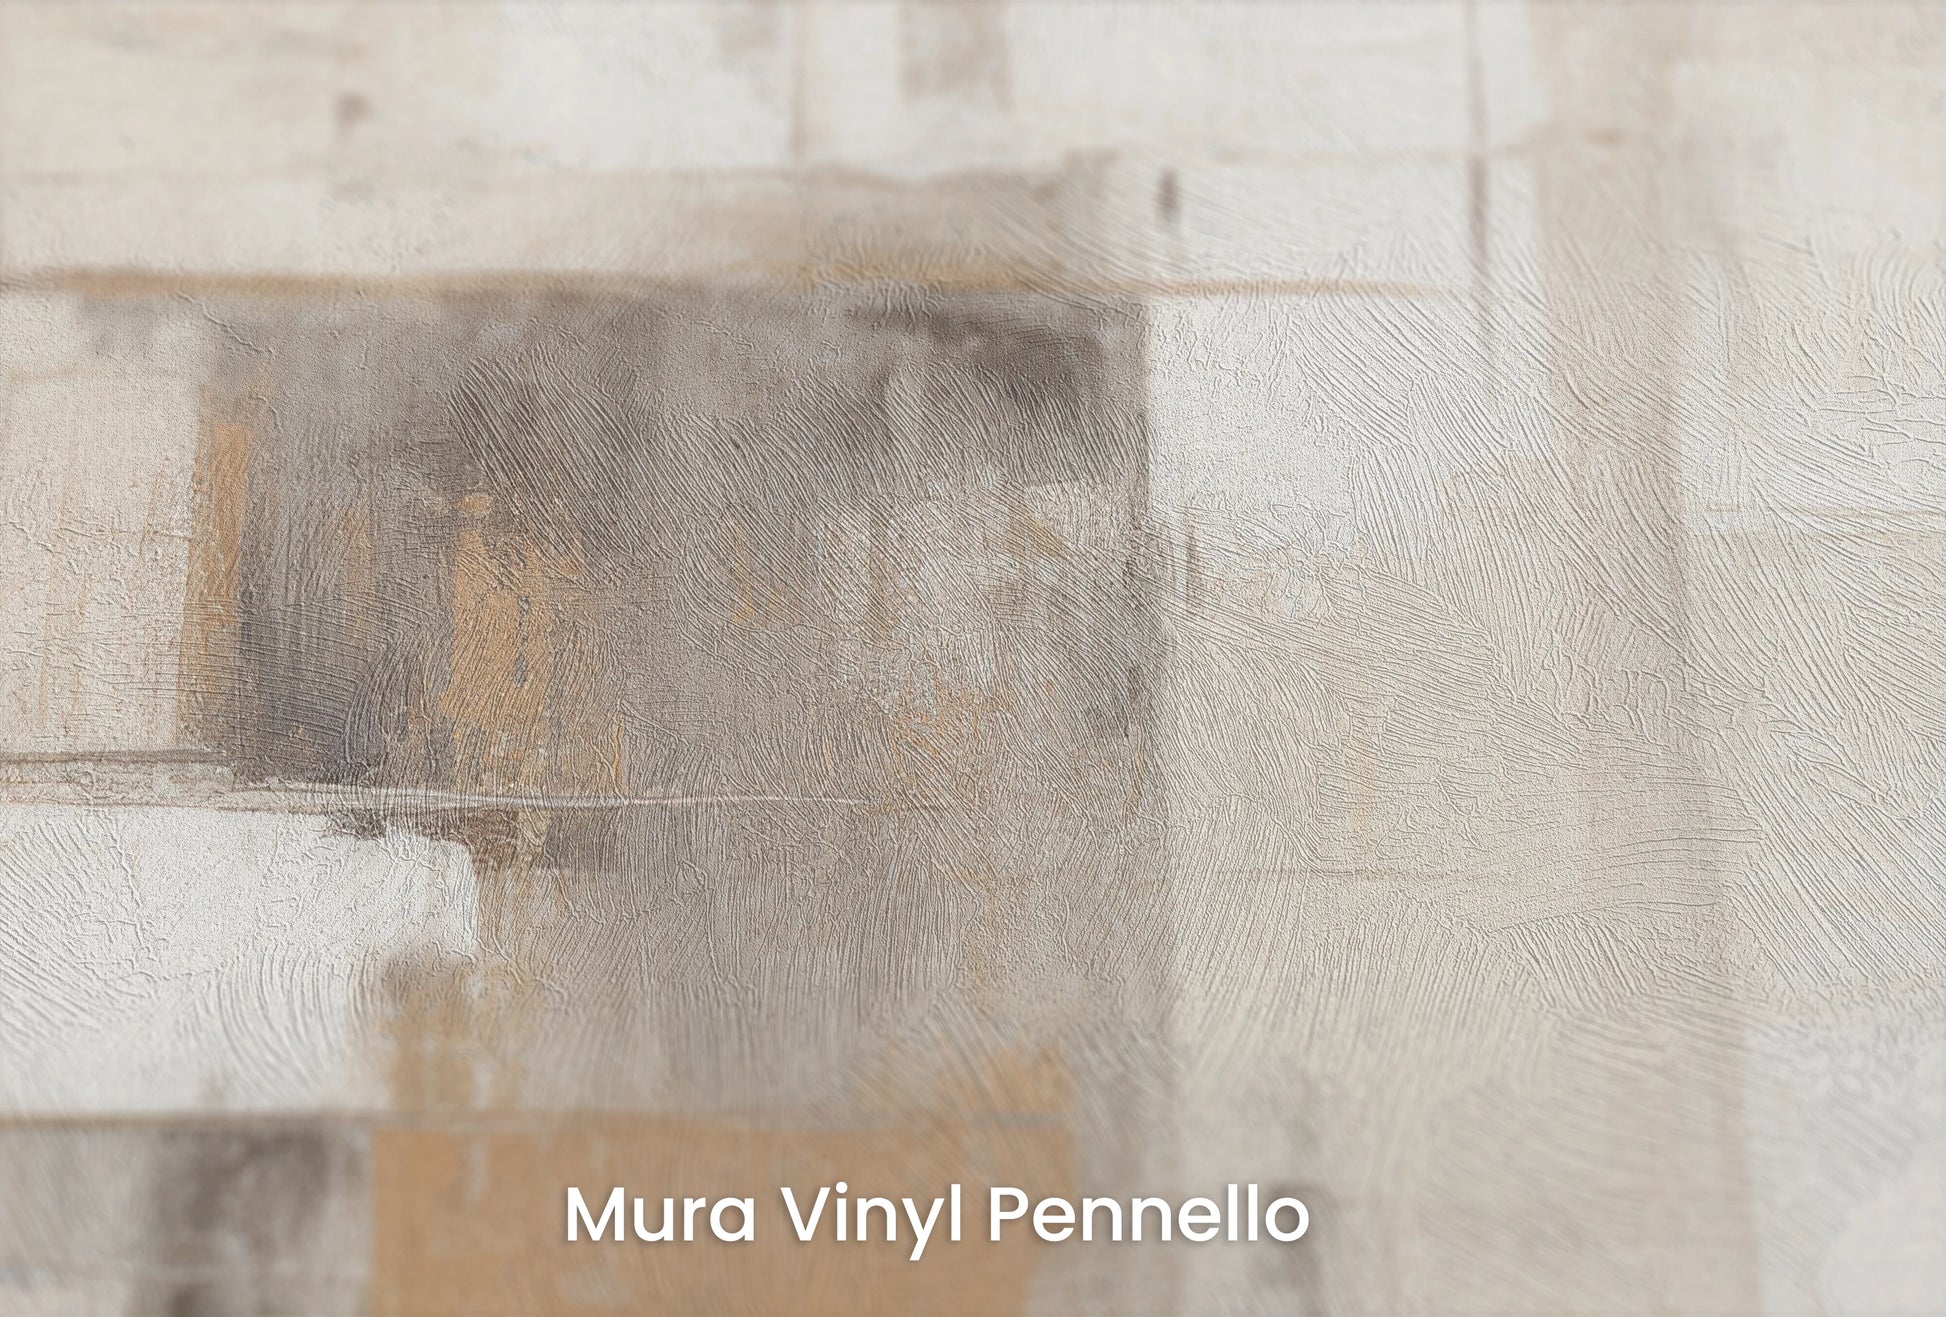 Zbliżenie na artystyczną fototapetę o nazwie Abstract Horizons na podłożu Mura Vinyl Pennello - faktura pociągnięć pędzla malarskiego.